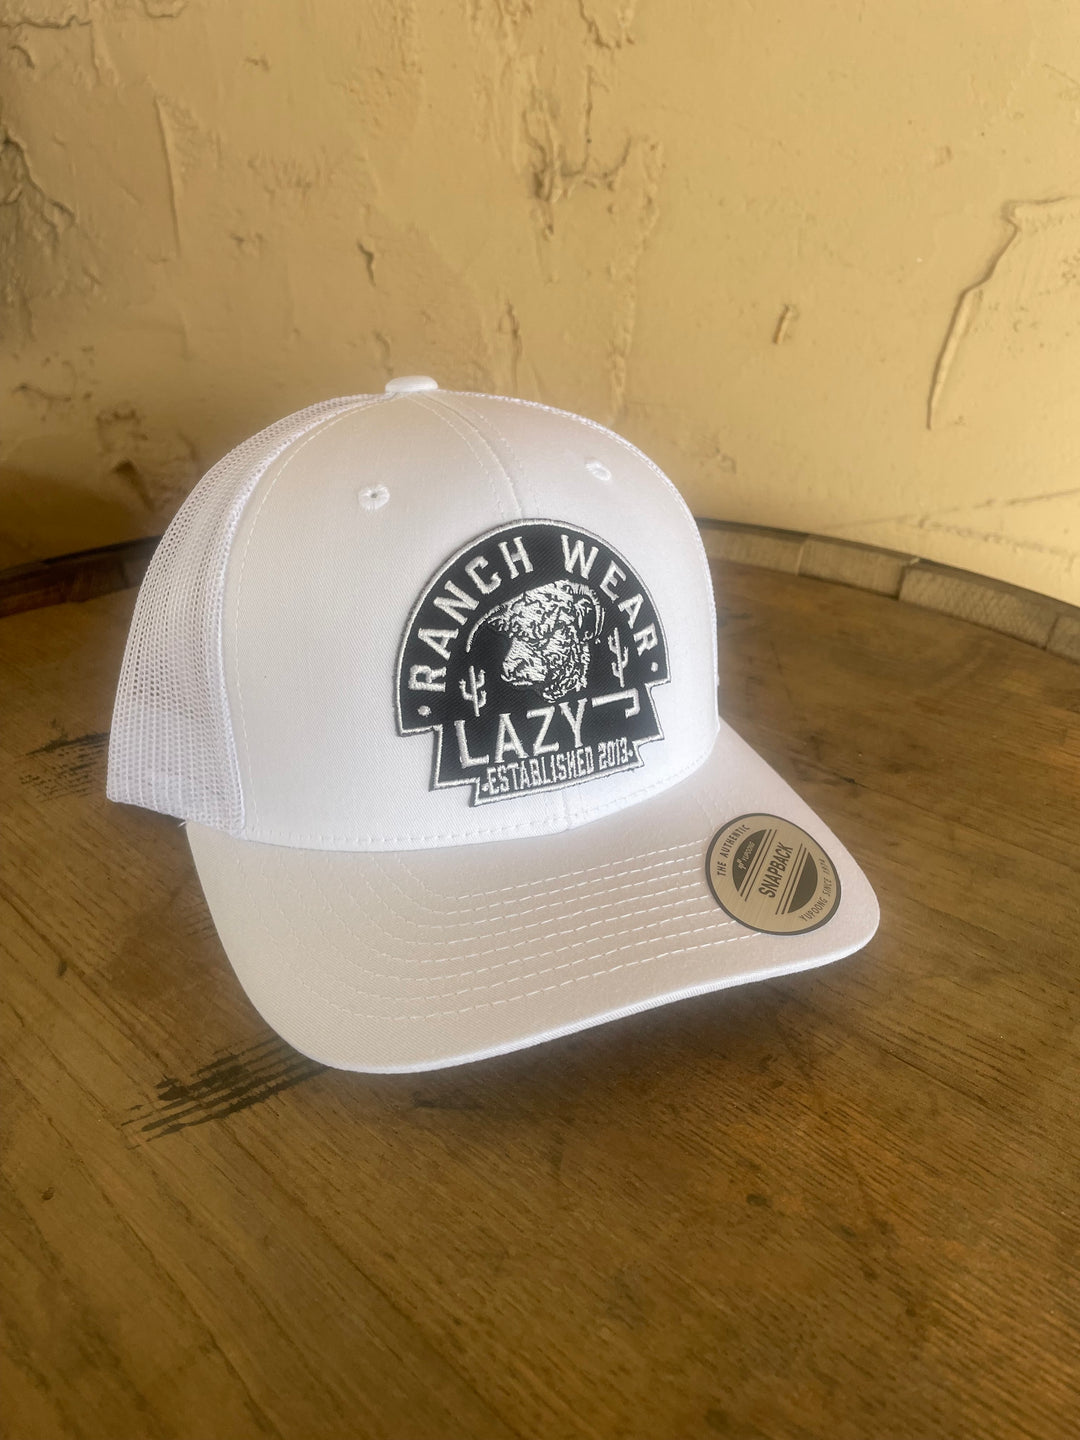 Lazy J Ranch Wear White & White 3.5" Black Arrowhead Cap